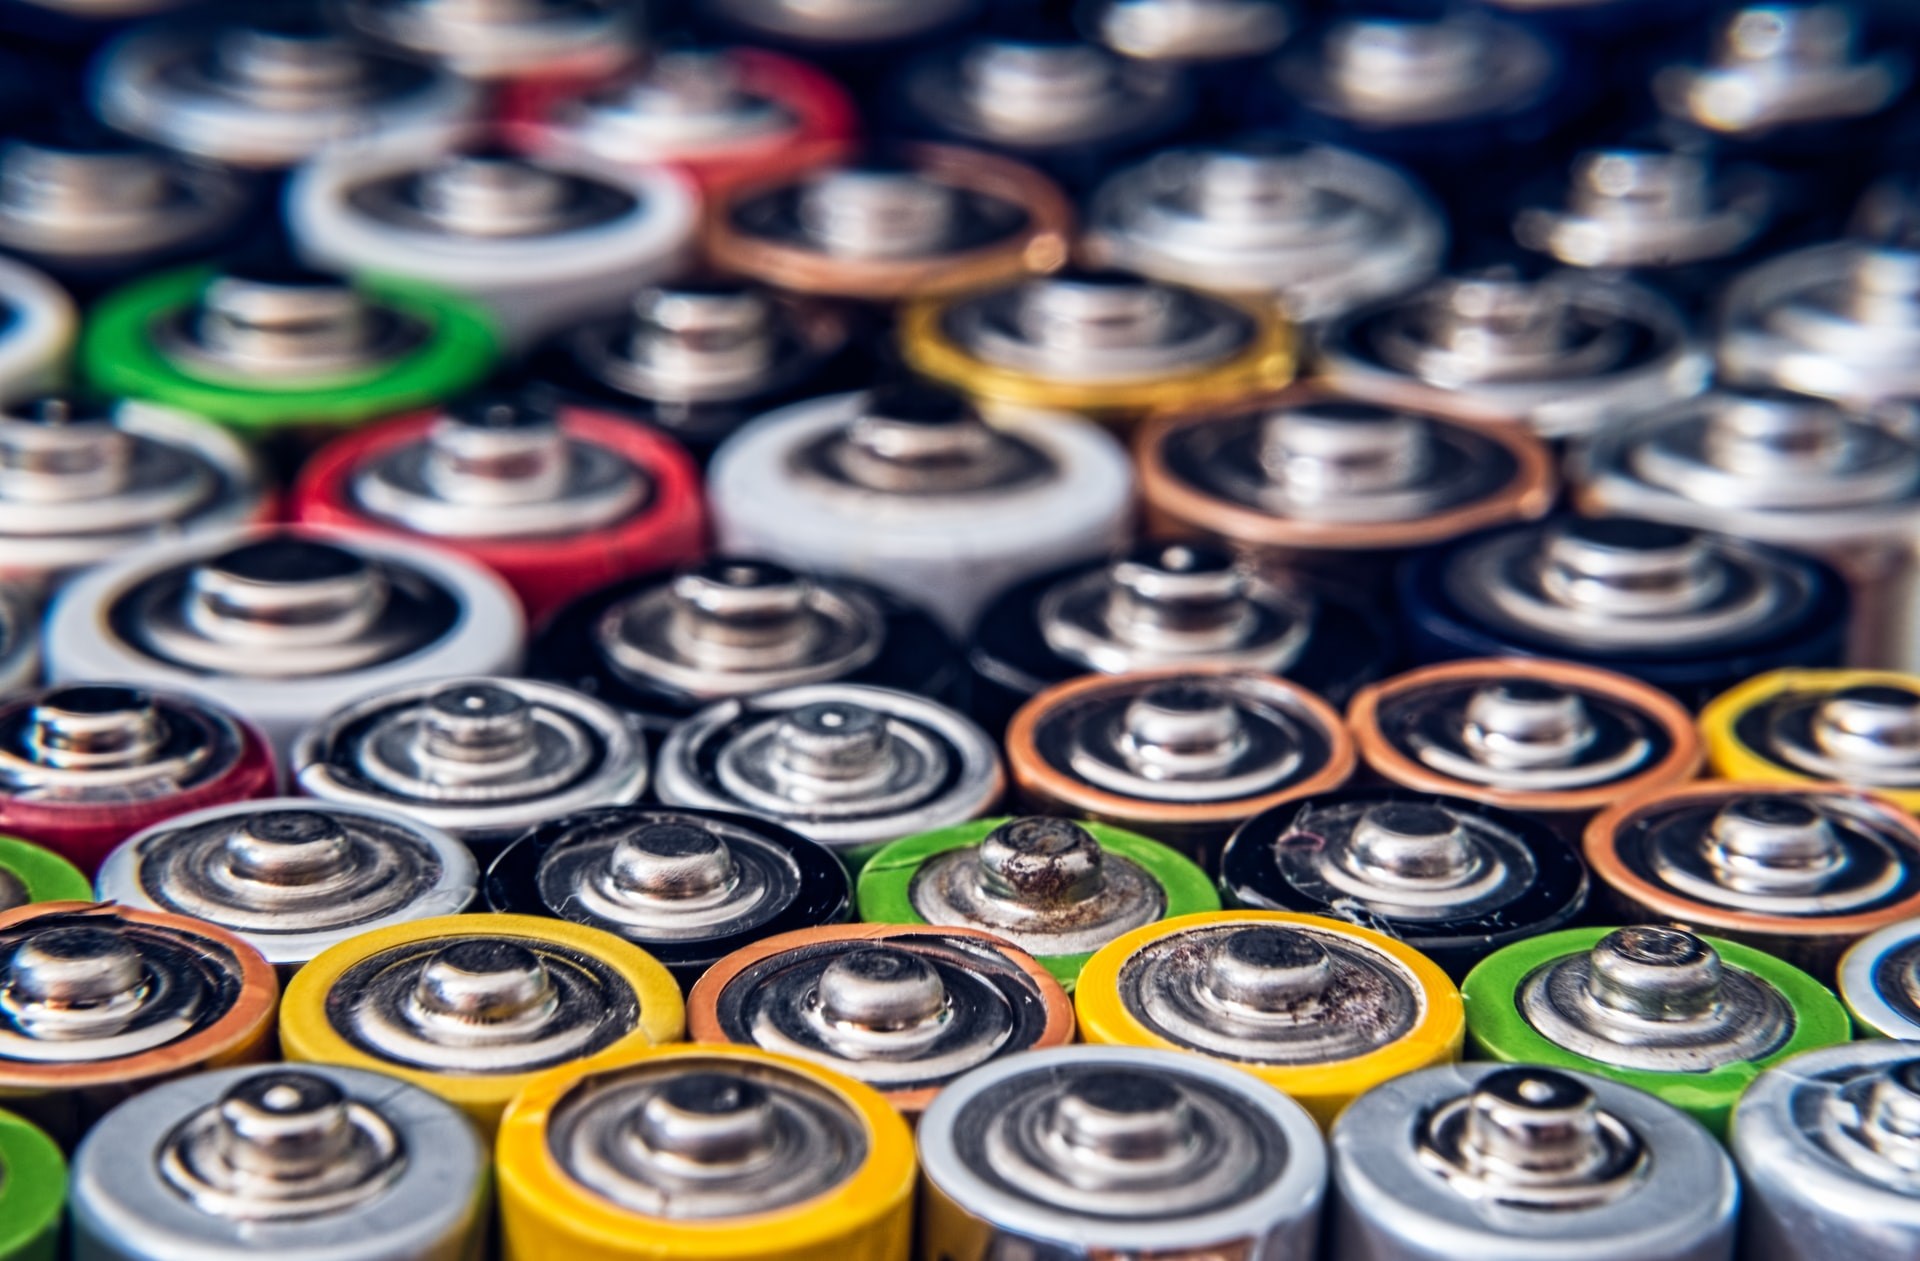 Tuzdan batarya yapımı daha az maliyetli olabilir